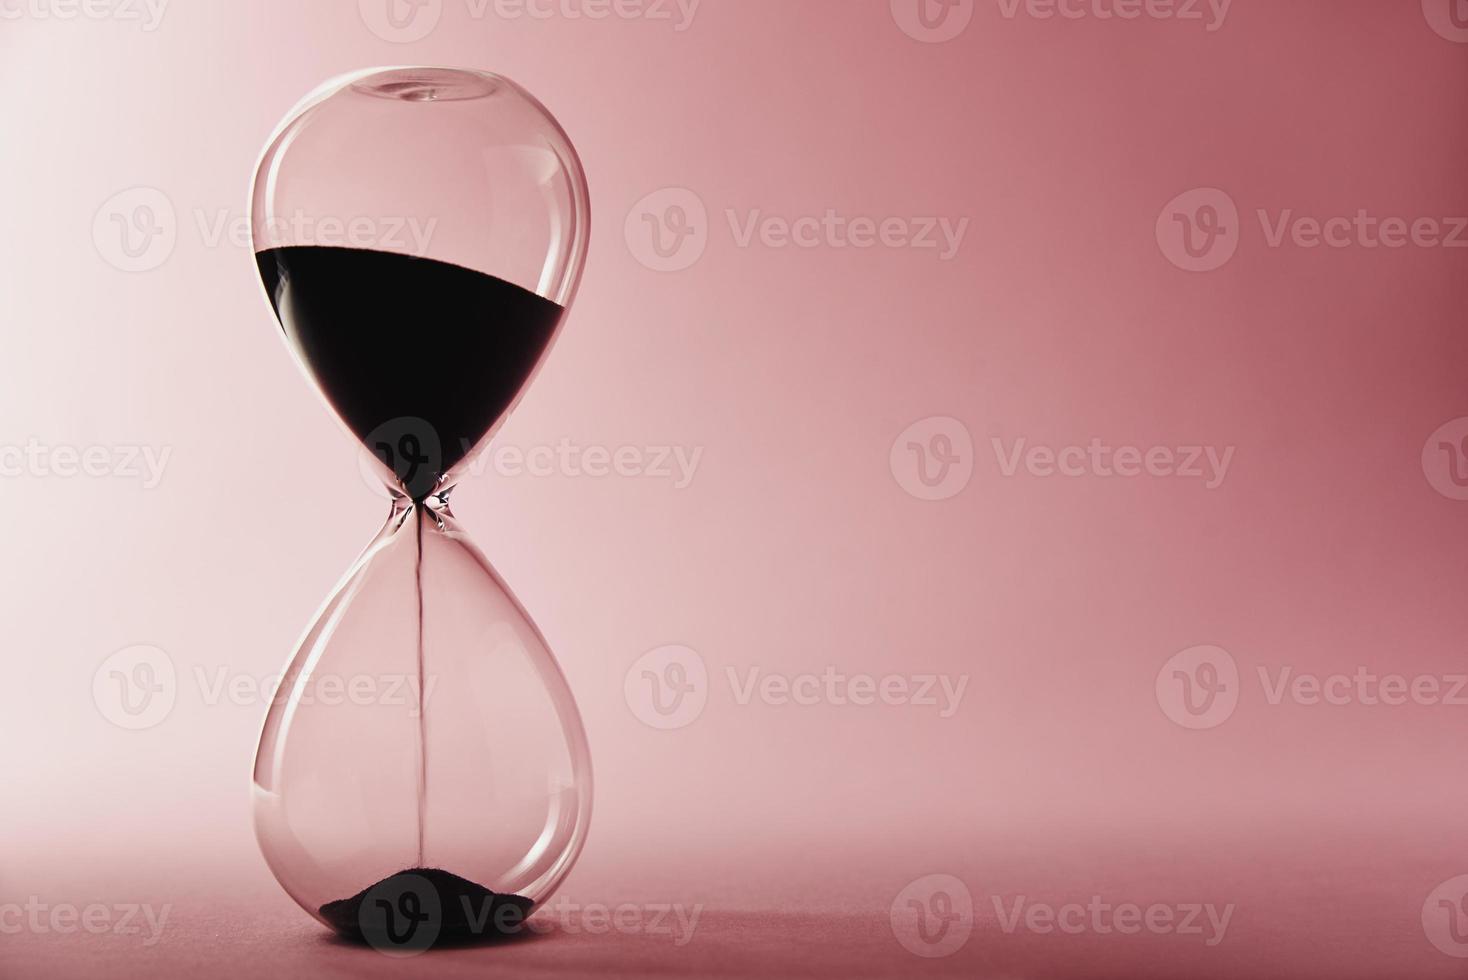 reloj de arena sobre fondo rosa, primer plano. concepto de urgencia y agotamiento del tiempo foto